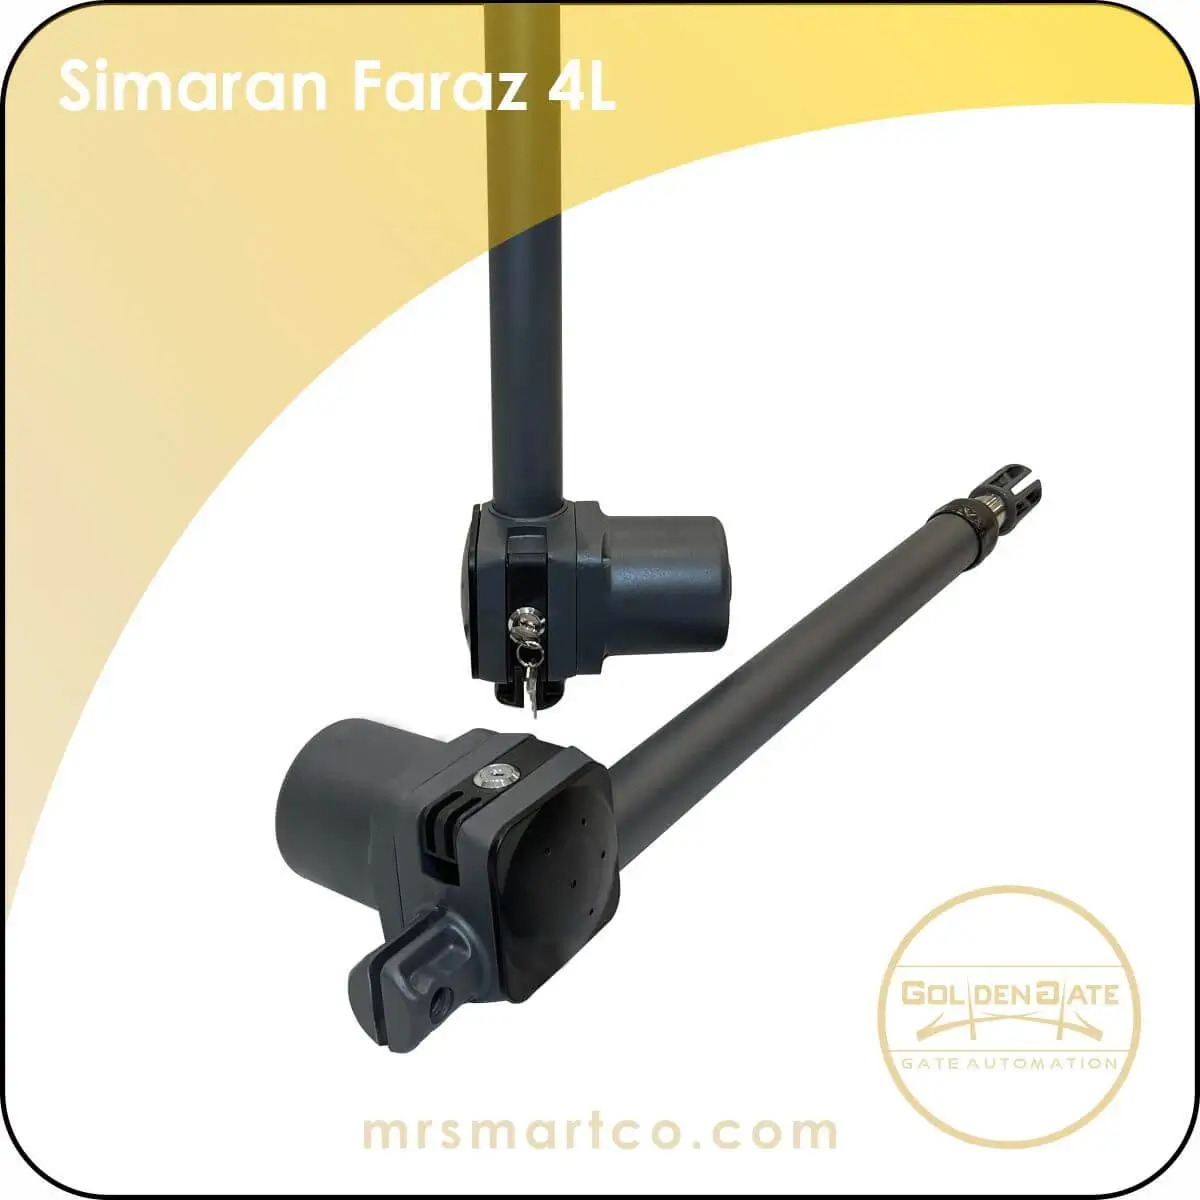 Simaran Faraz 4L